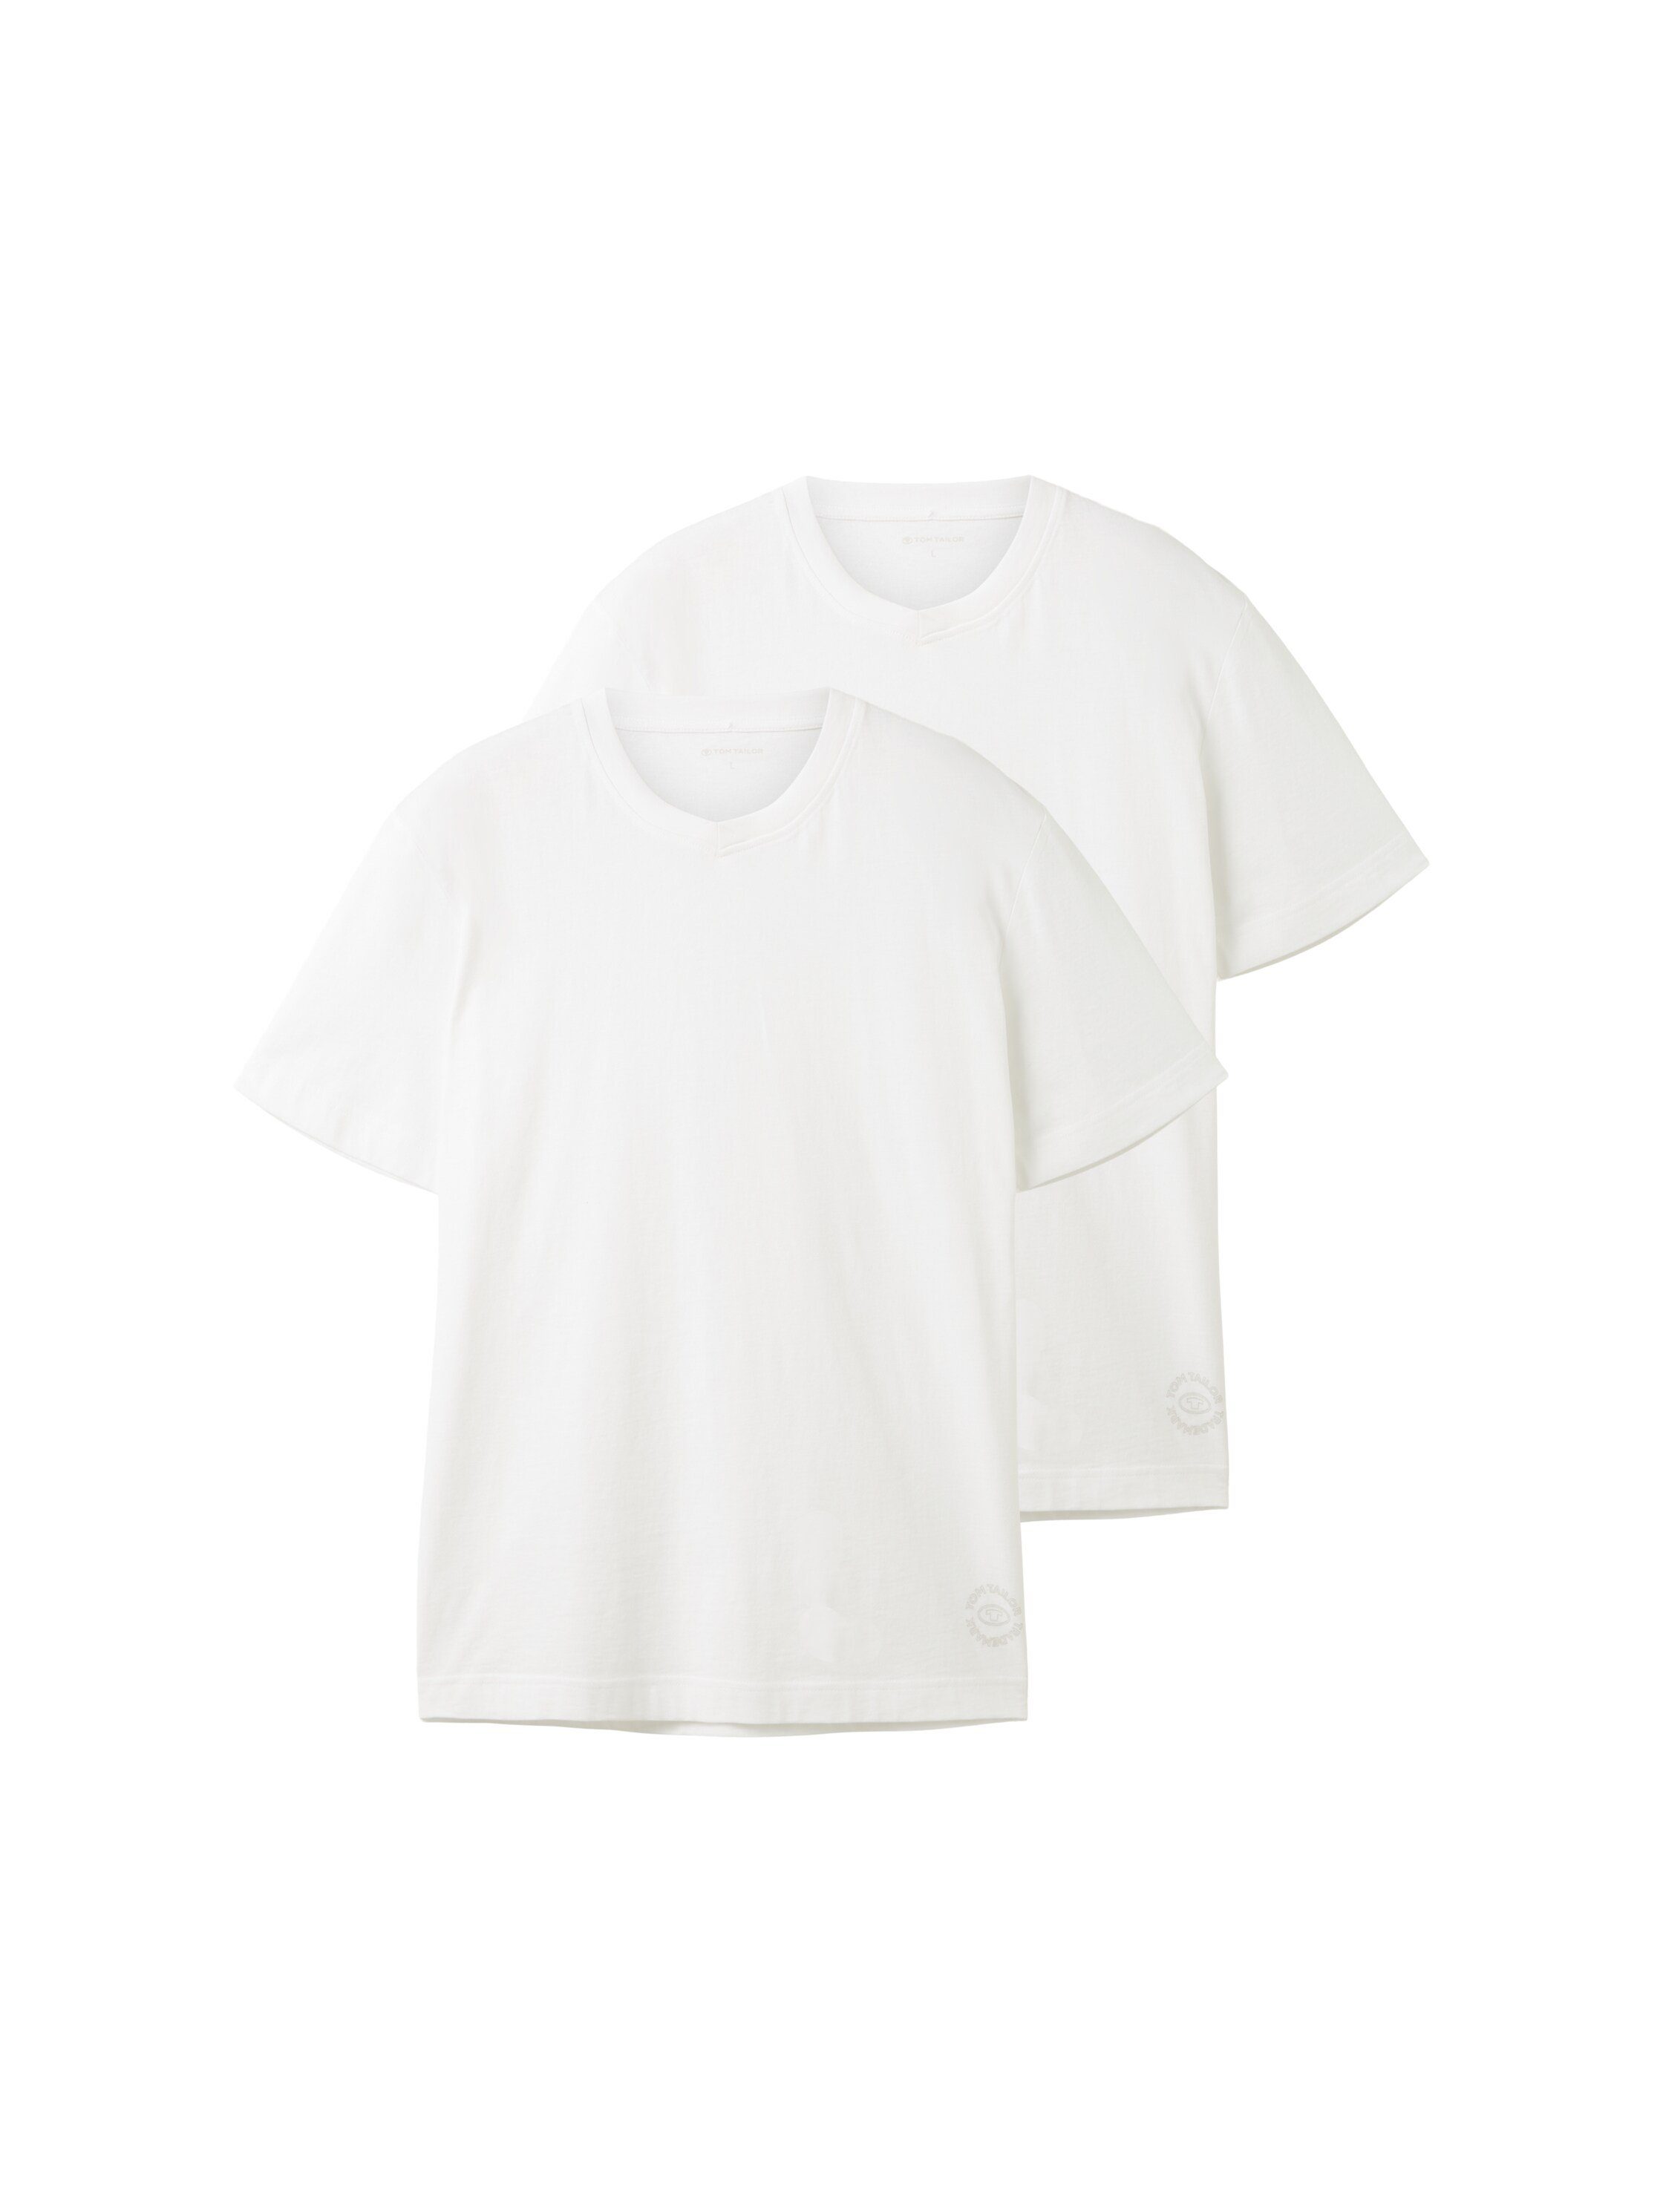 mit white TOM TAILOR T-Shirt V-Ausschnitt